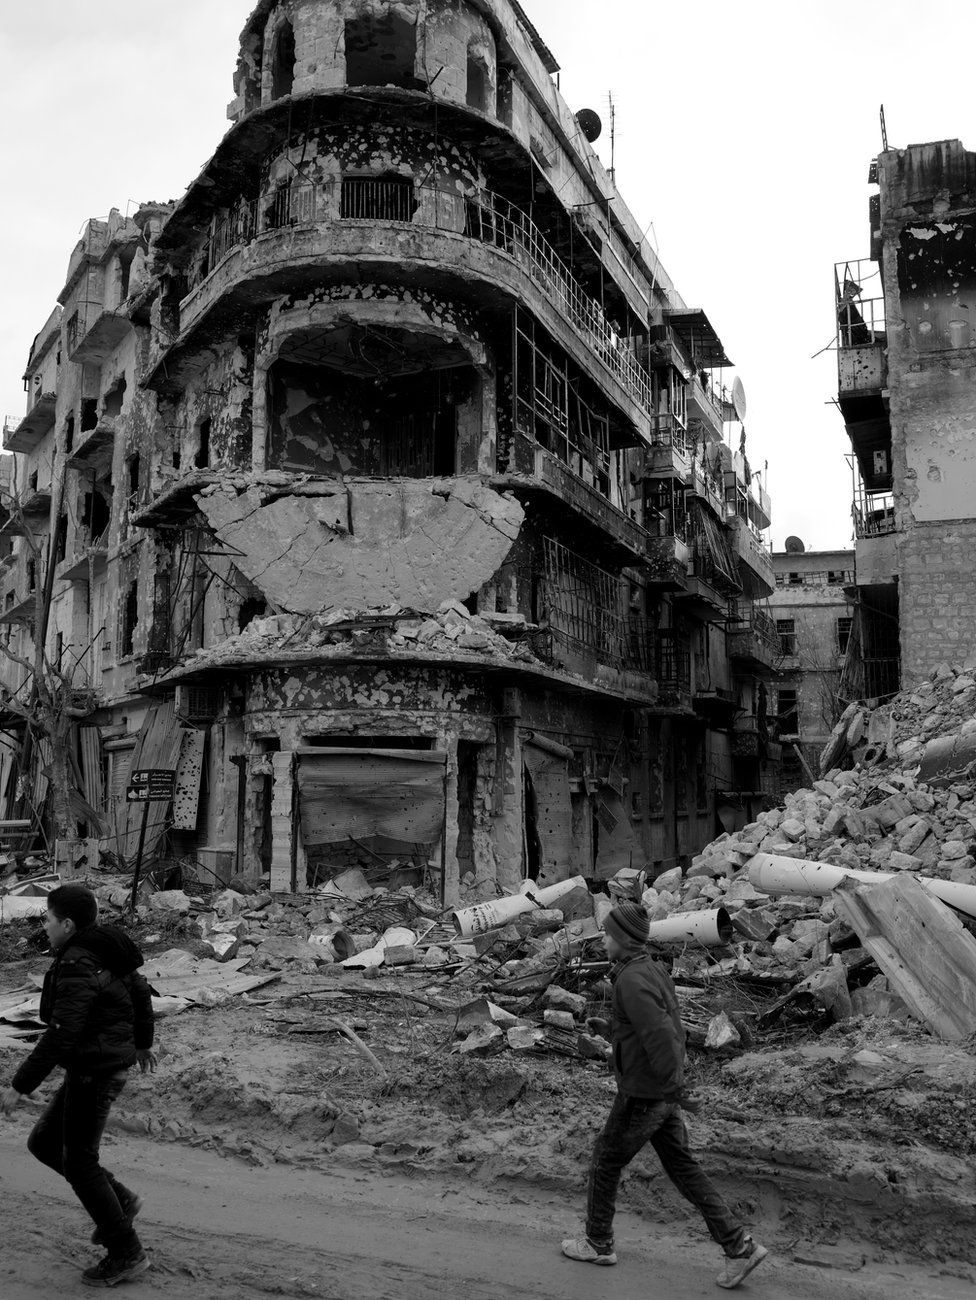 Children walk past war-damaged buildings in Aleppo